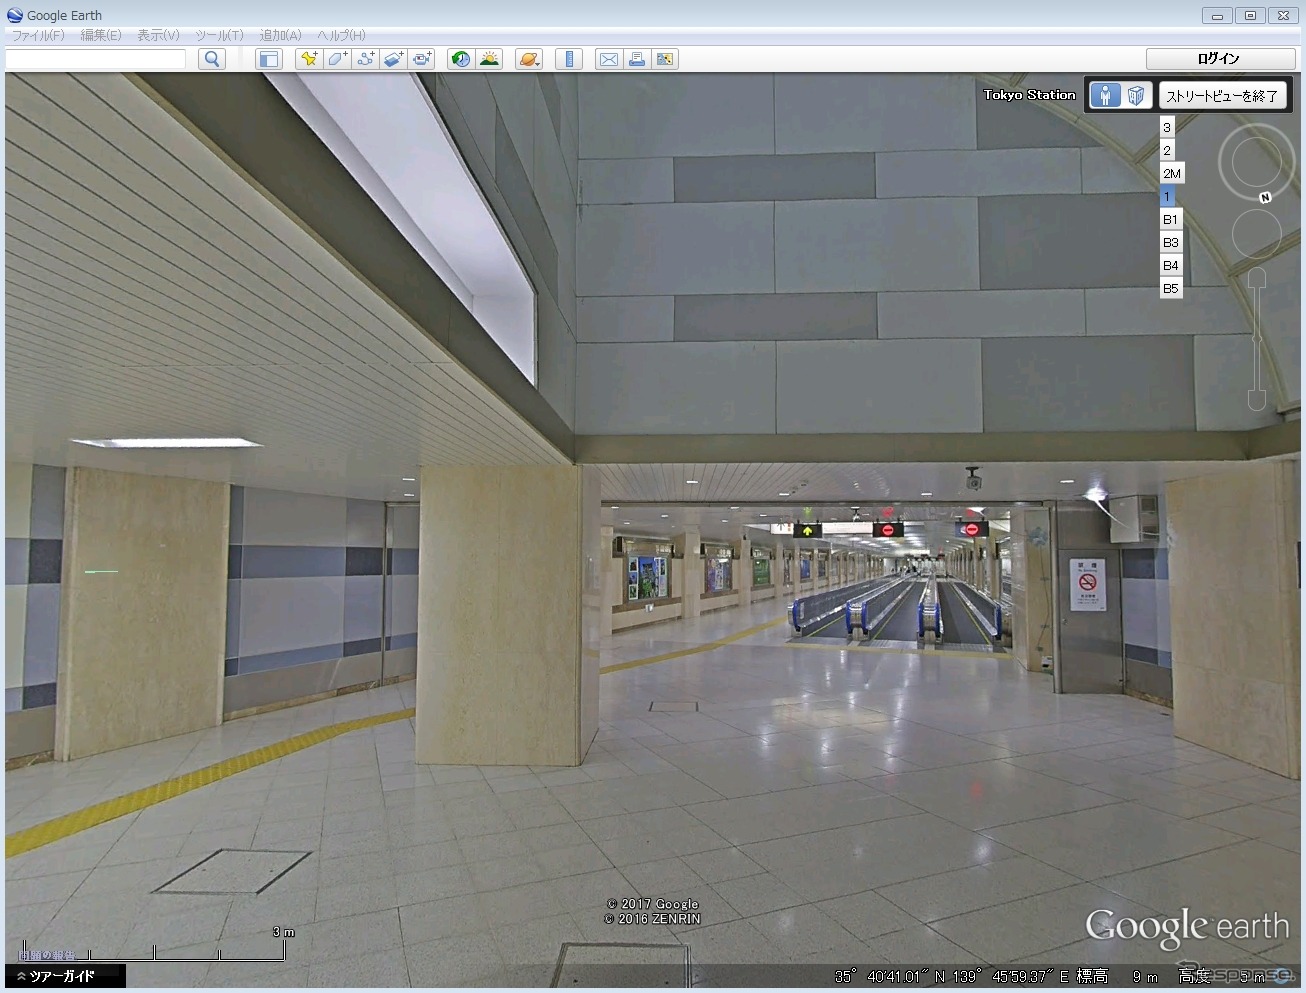 東京駅の京葉線連絡通路も無人の状態で見ることができる。